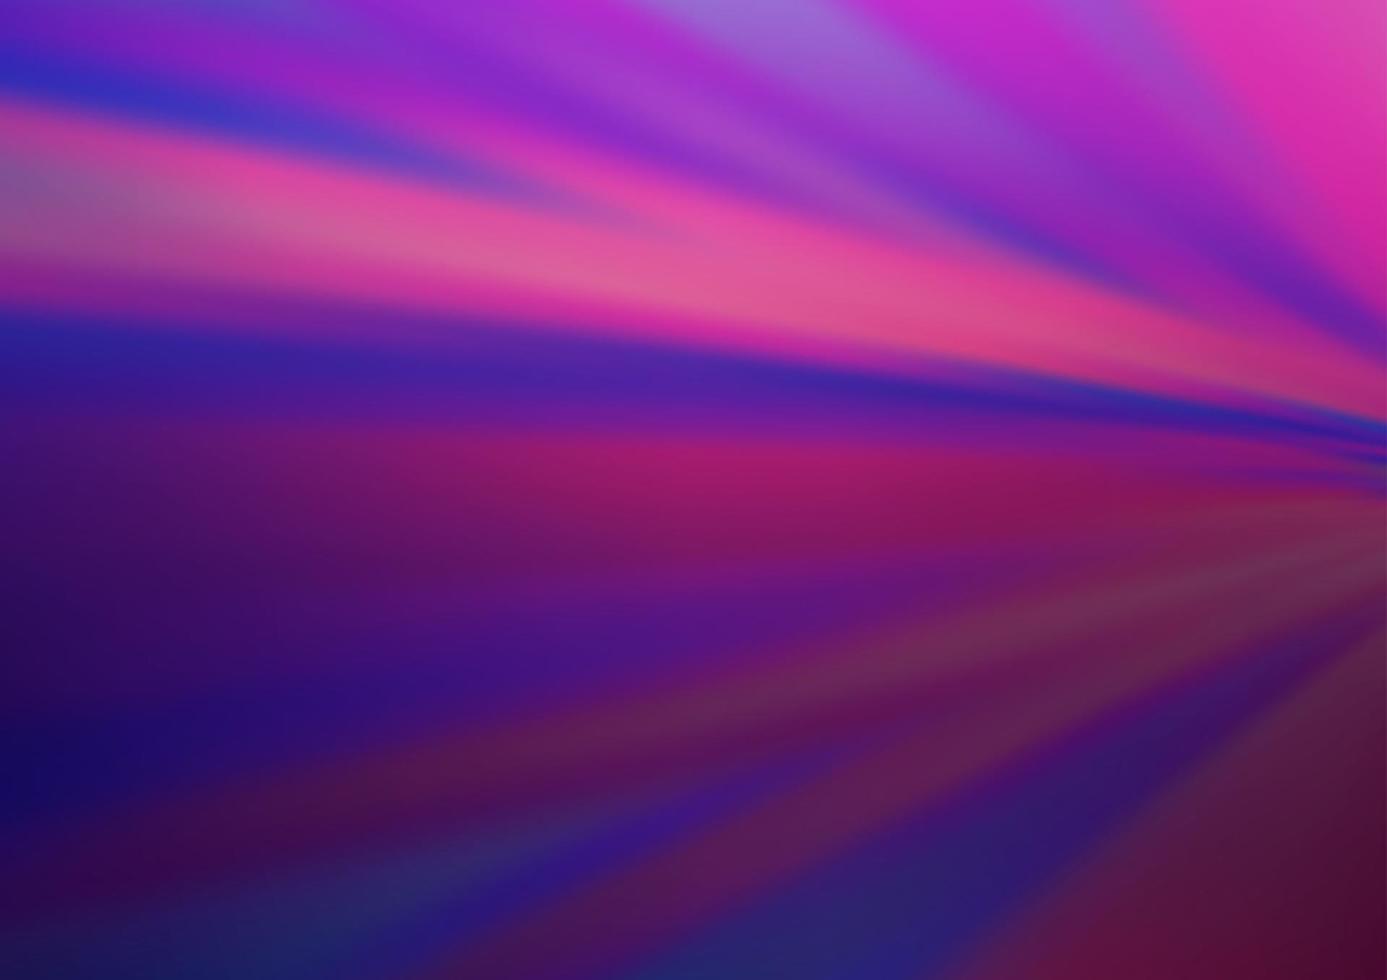 Dark Purple vector blurred bright background.